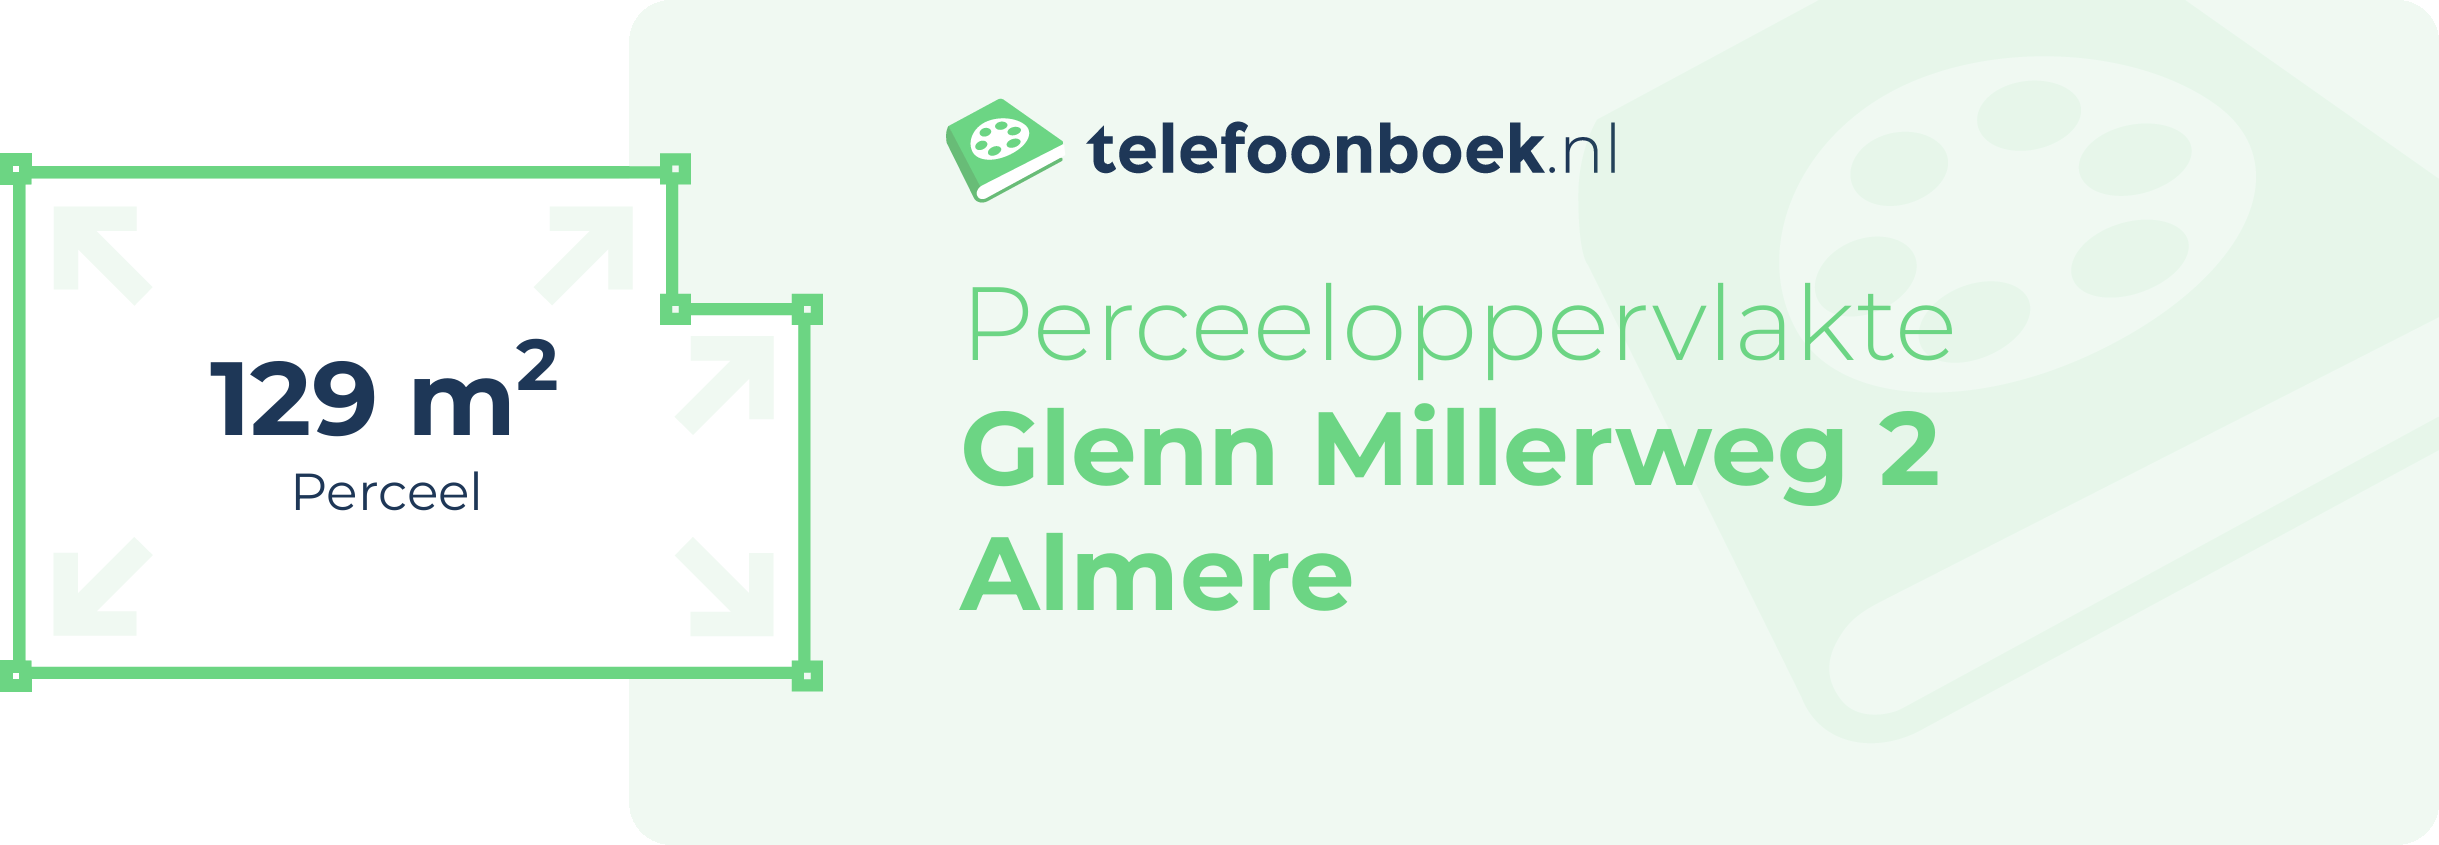 Perceeloppervlakte Glenn Millerweg 2 Almere